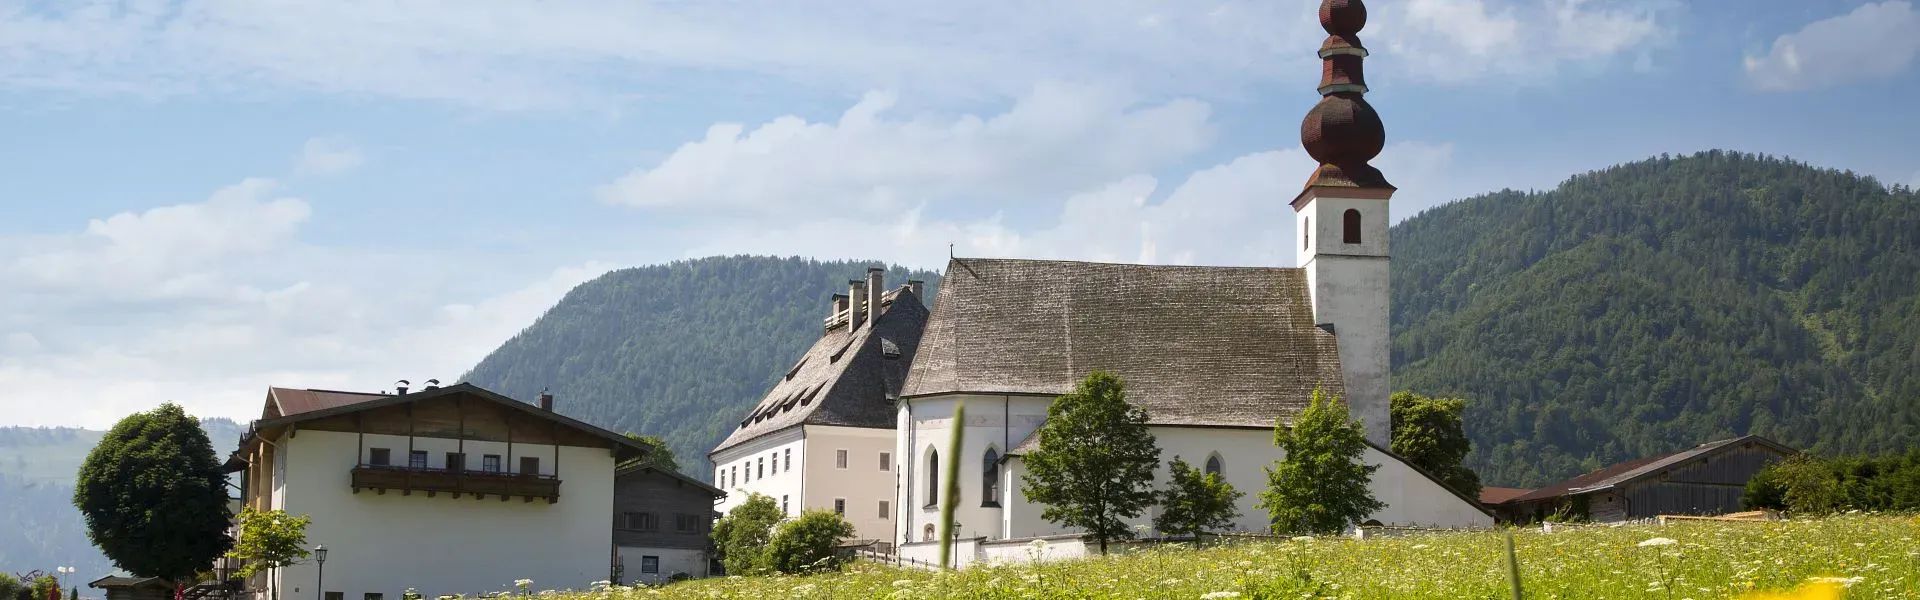 PillerseeTal - Sommer - Ortsansicht - Pfarrkirche - St. Ulrich am Pillersee